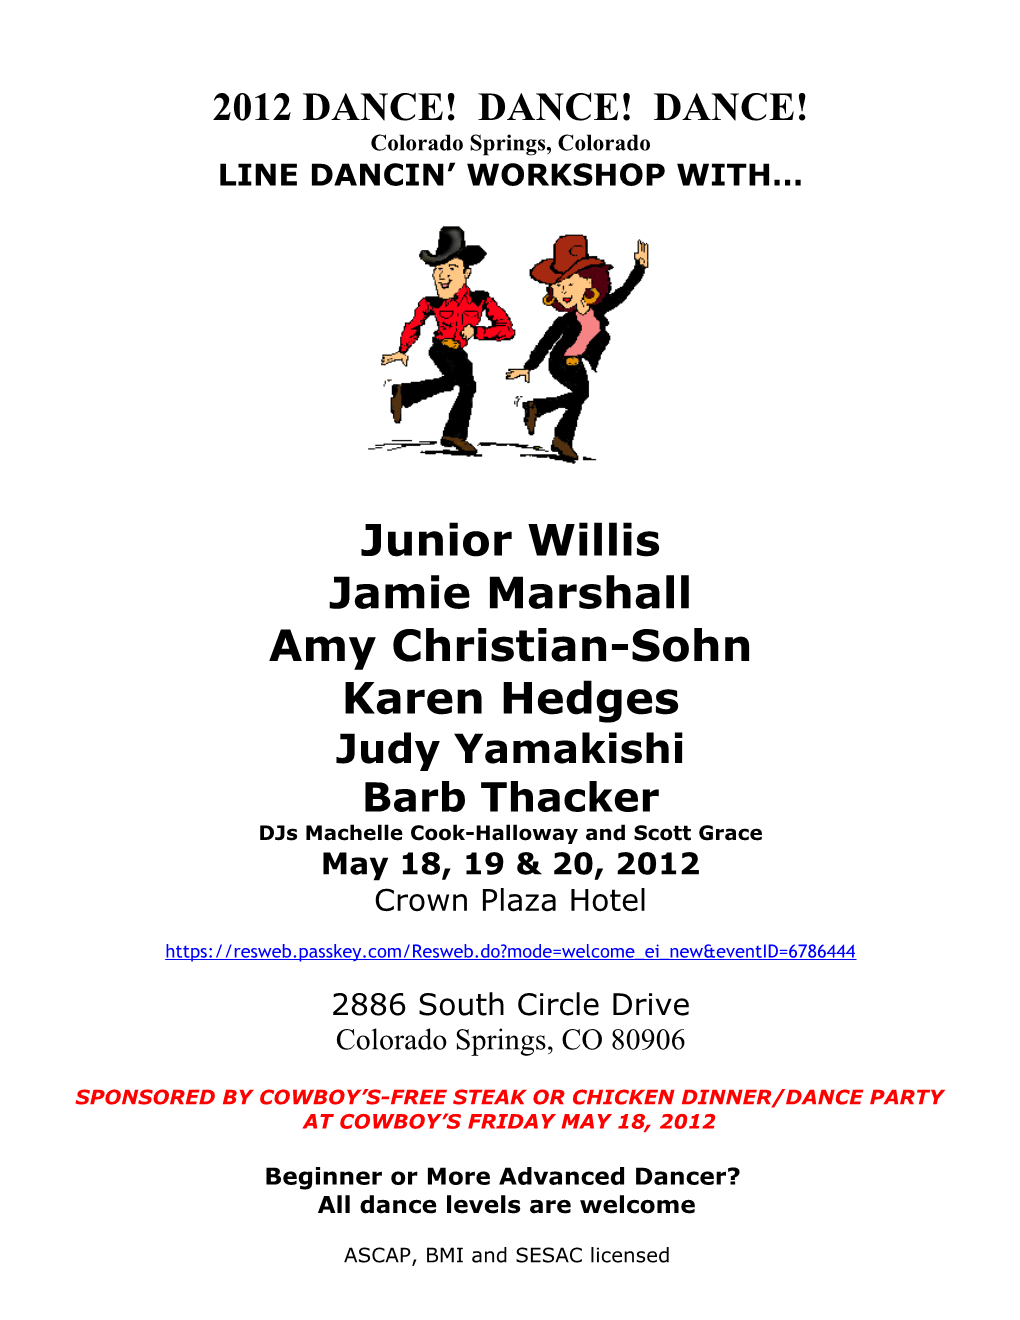 Line Dancin Workshop With